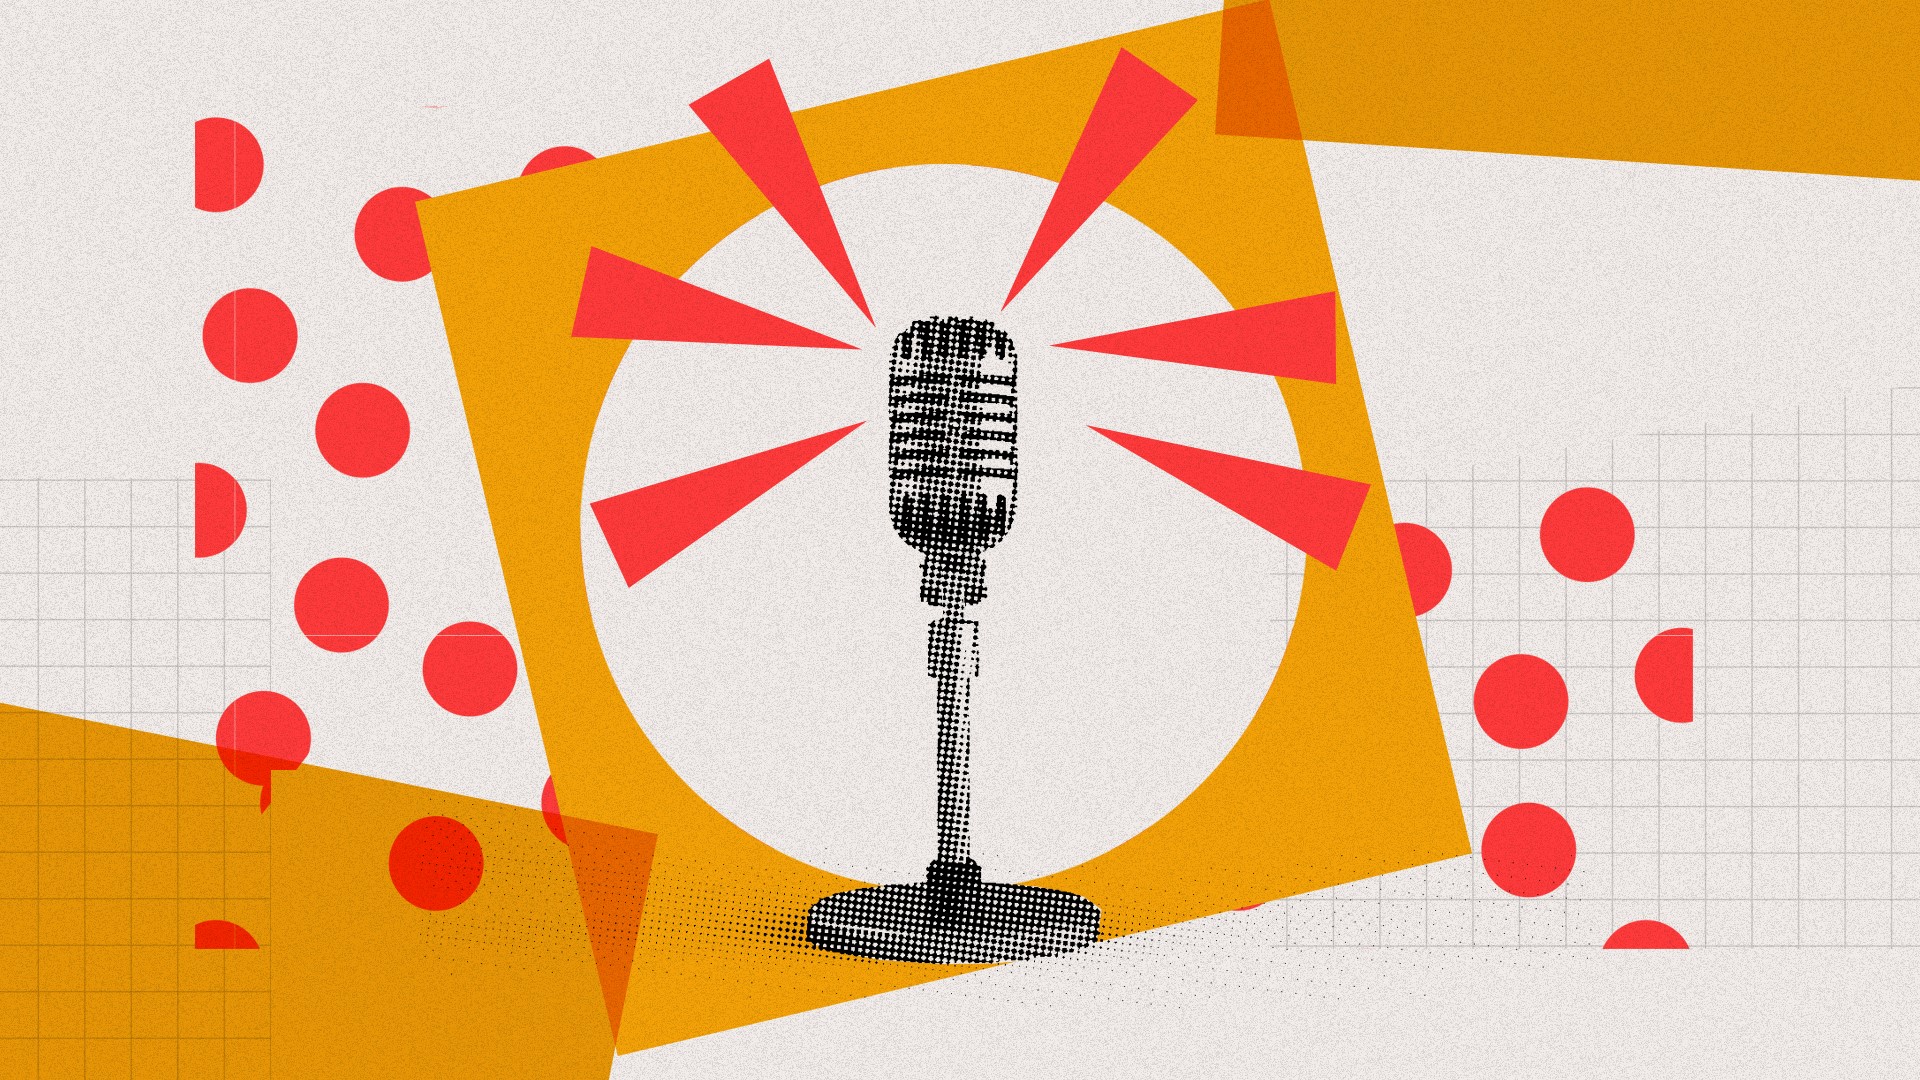 Aperte o play: 8 podcasts sobre startups e tecnologia para não perder as novidades do mercado